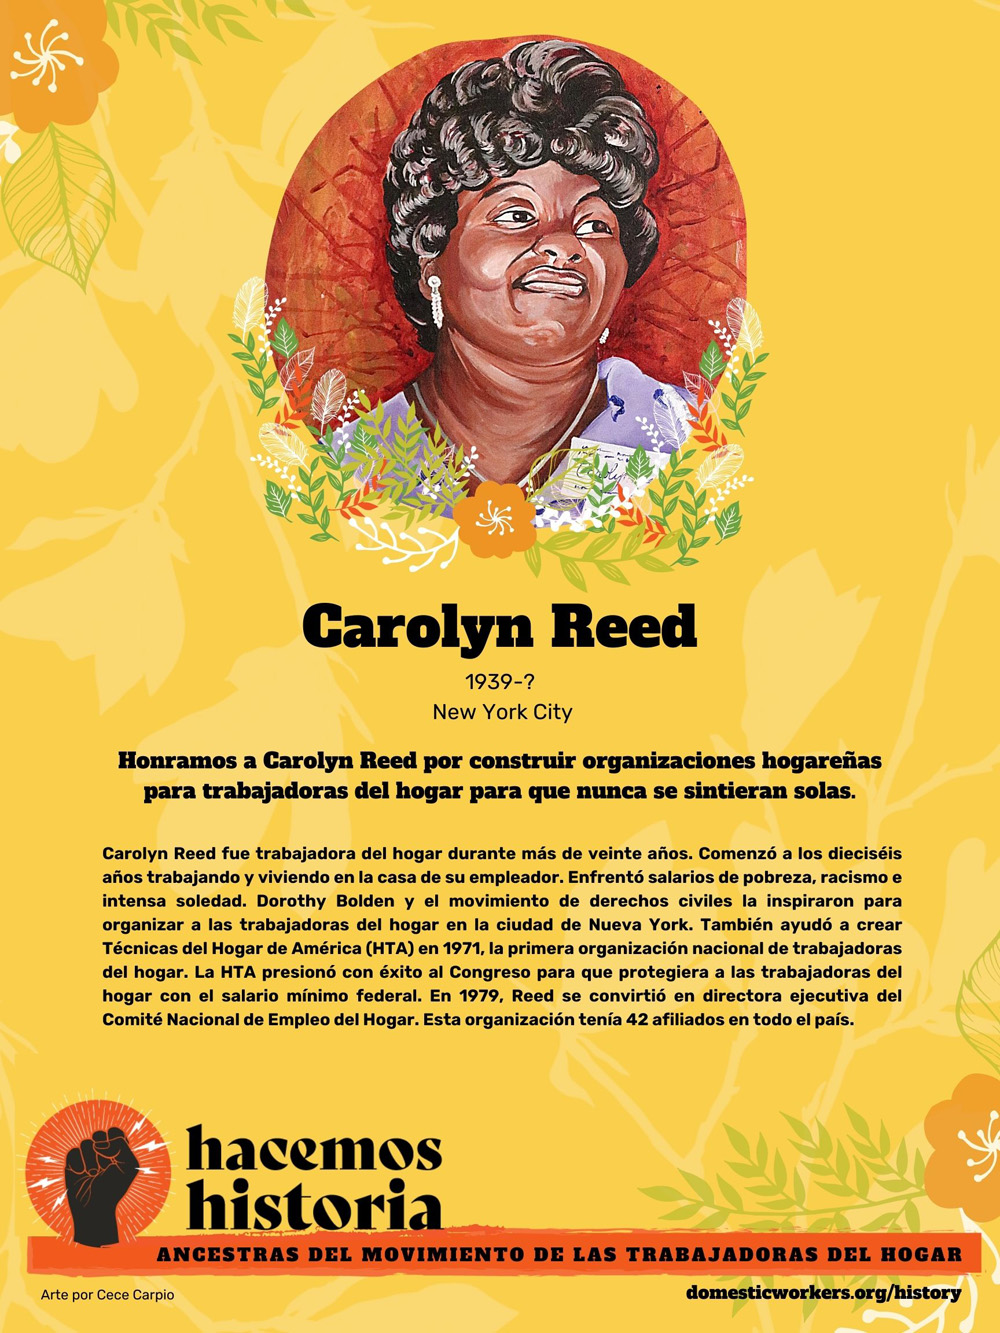 Retratos de las ancestras del movimiento de trabajadoras de hogar: Carolyn Reed